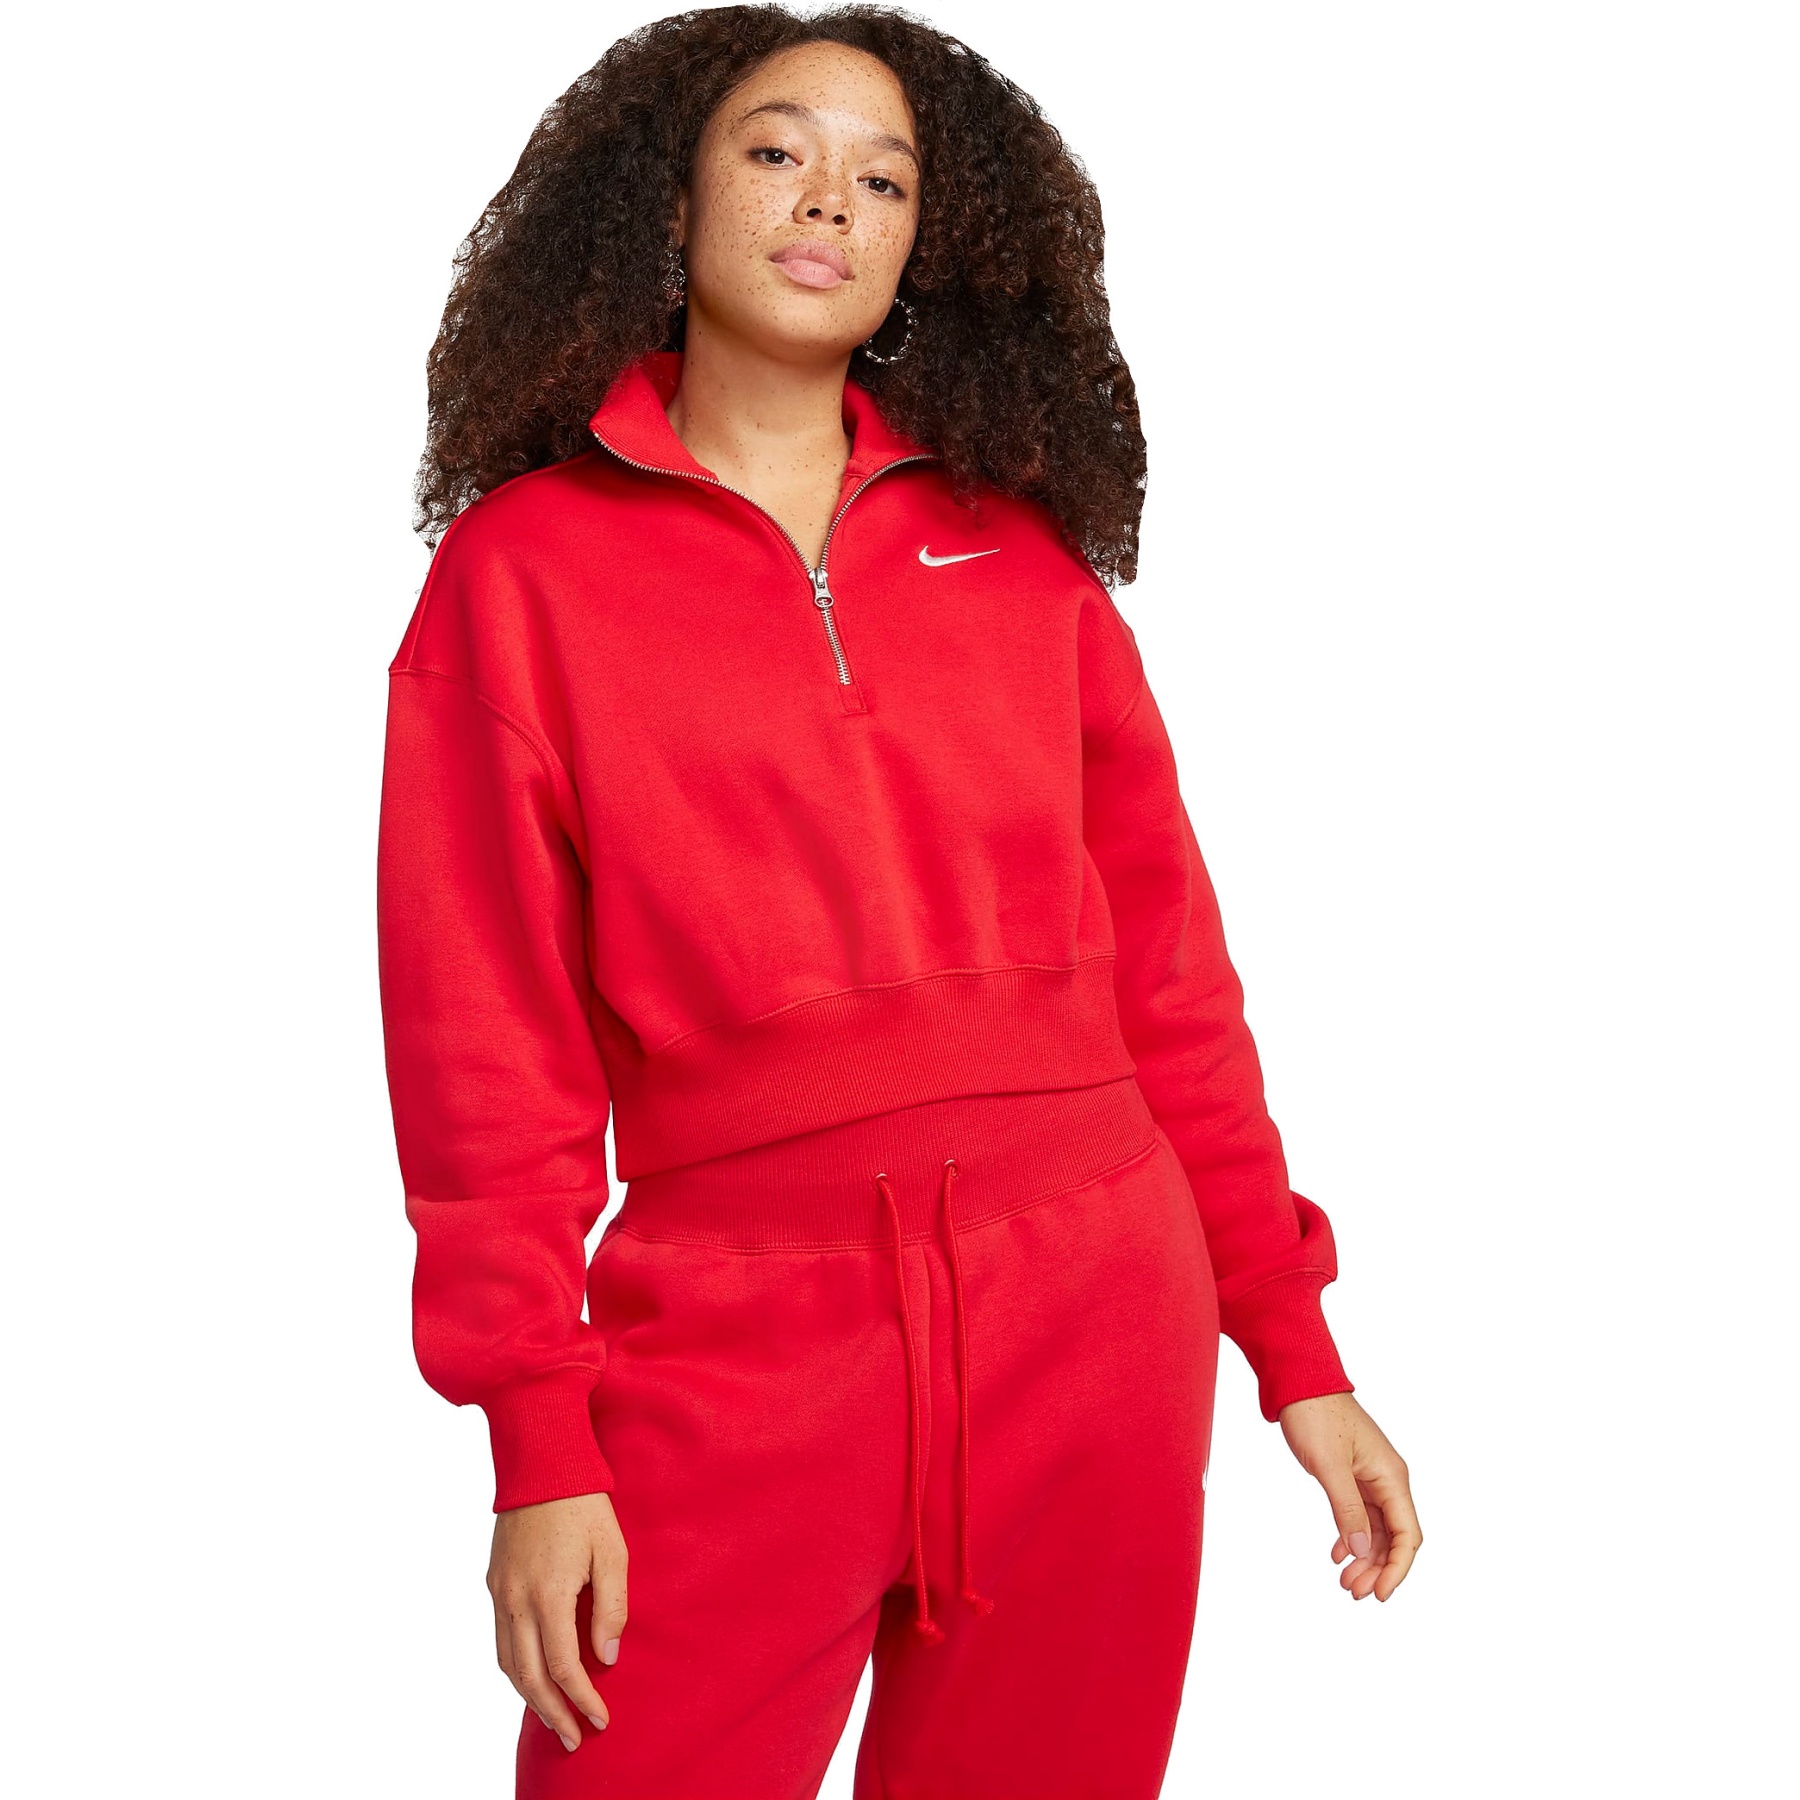 Produktbild von Nike Sportswear Phoenix Fleece Extragroßer 1/2-Zip Sweater für Damen - university red/sail DQ5767-657